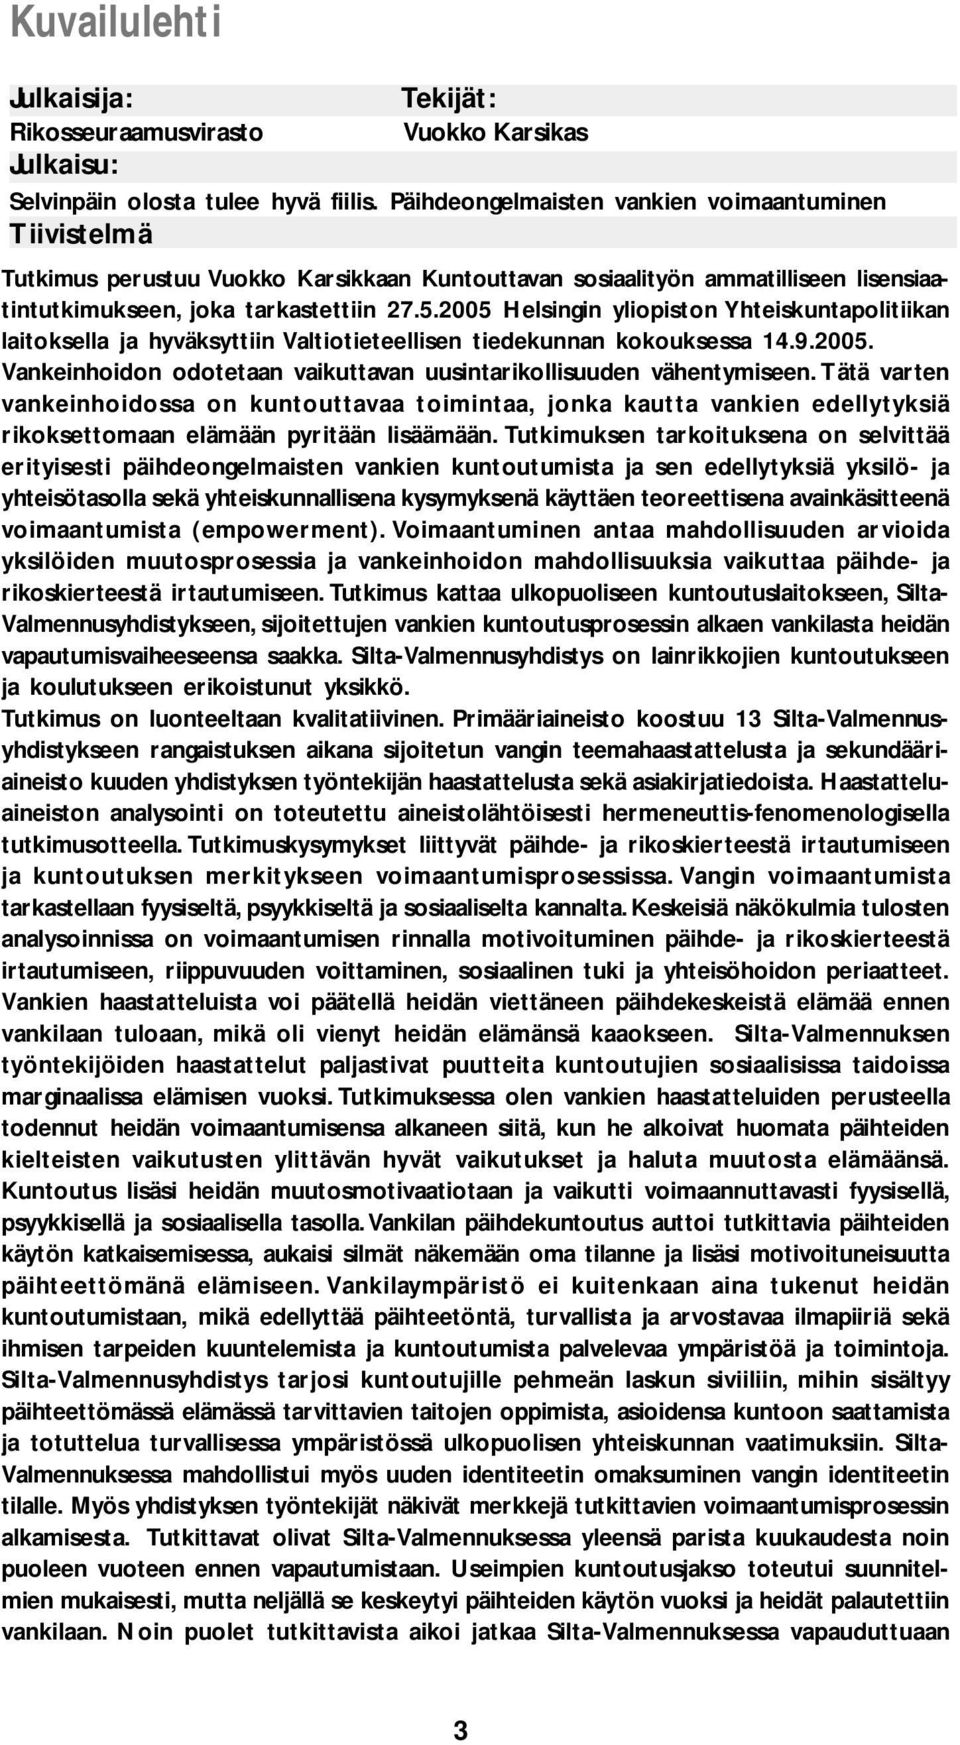 2005 Helsingin yliopiston Yhteiskuntapolitiikan laitoksella ja hyväksyttiin Valtiotieteellisen tiedekunnan kokouksessa 14.9.2005. Vankeinhoidon odotetaan vaikuttavan uusintarikollisuuden vähentymiseen.